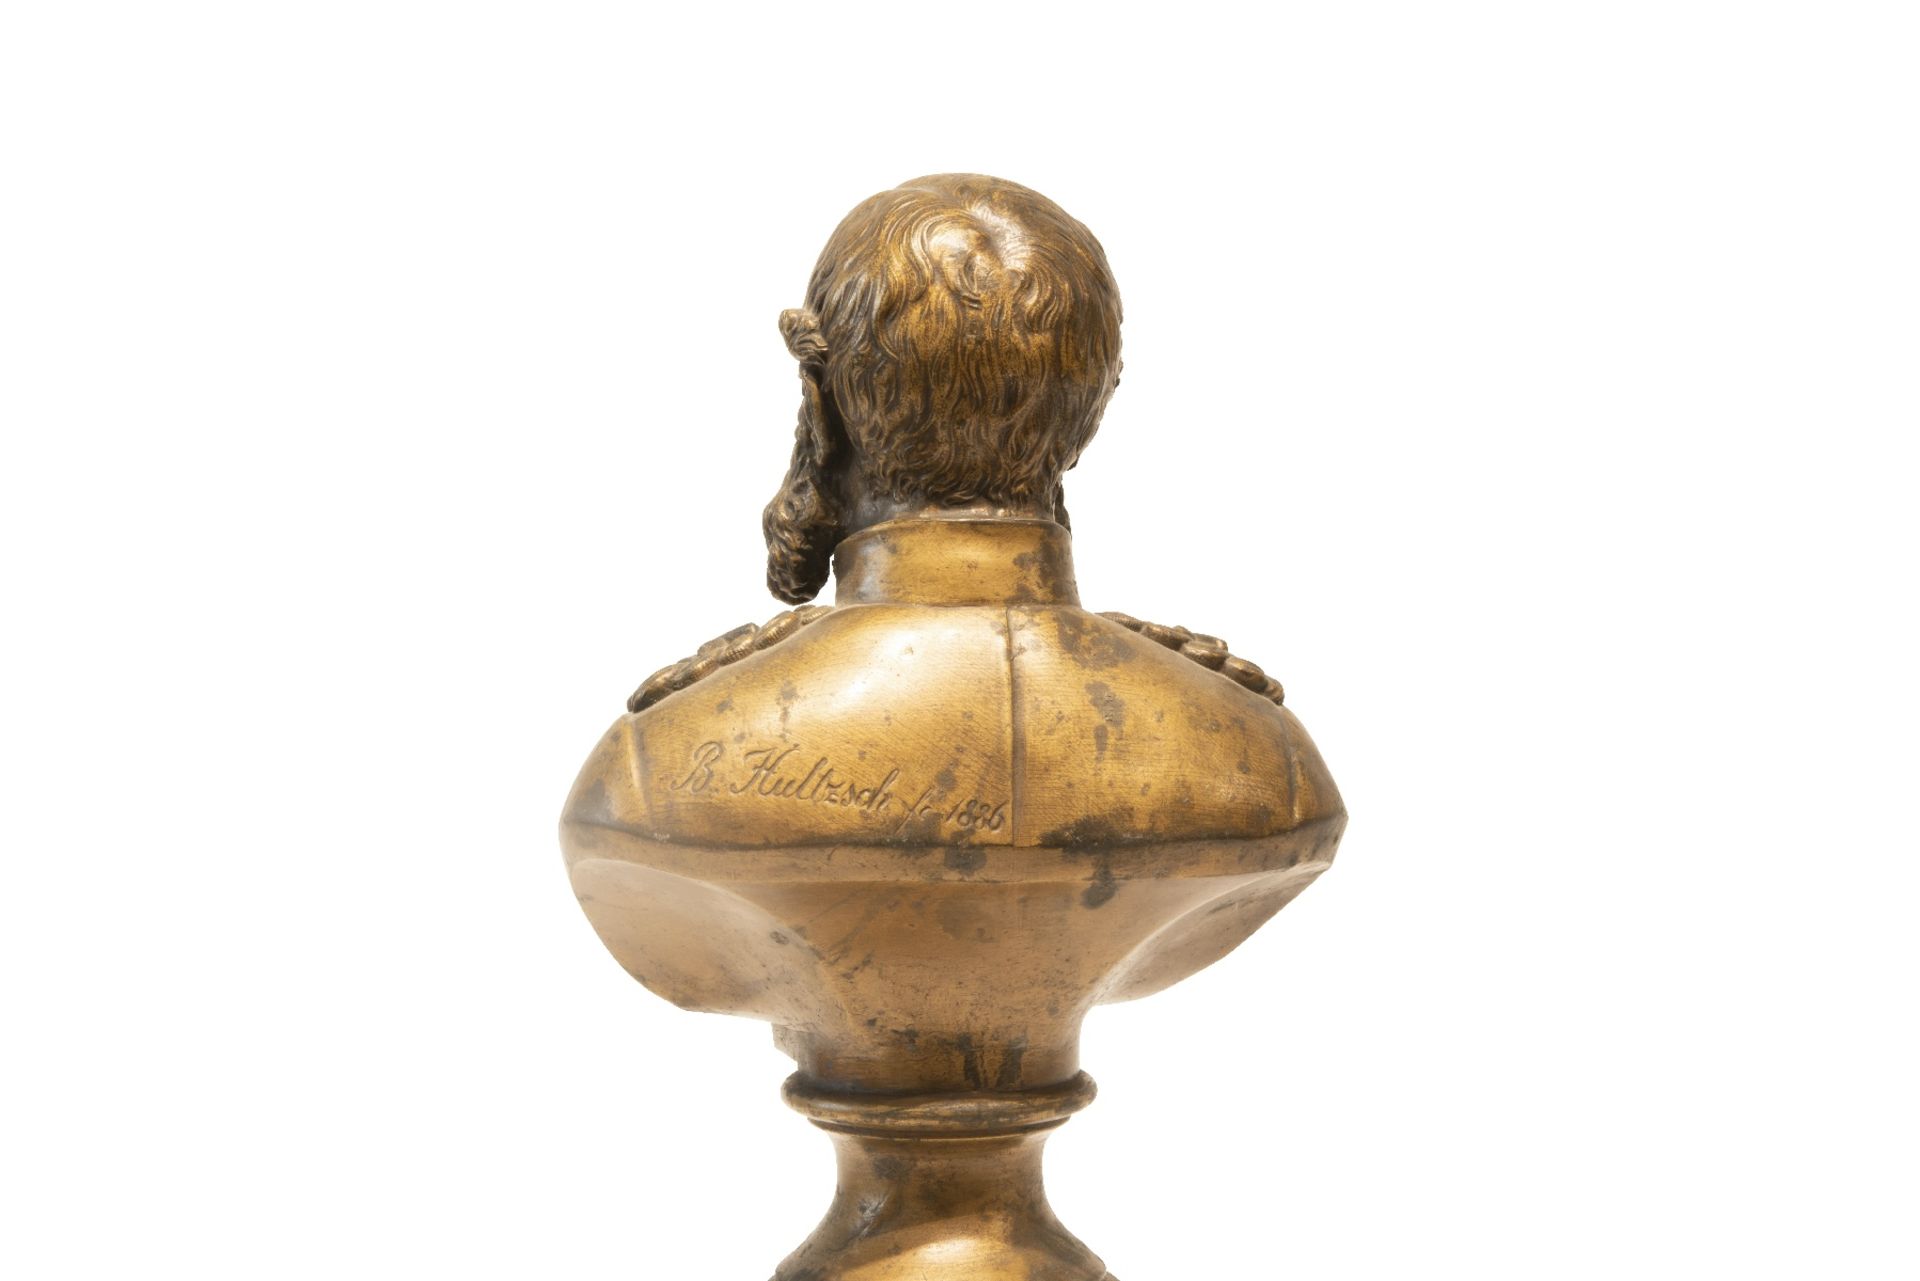 Bronzebueste Albert Koenig v. Sachsen | Bronze Bust of Albert King of Saxony - Bild 3 aus 5